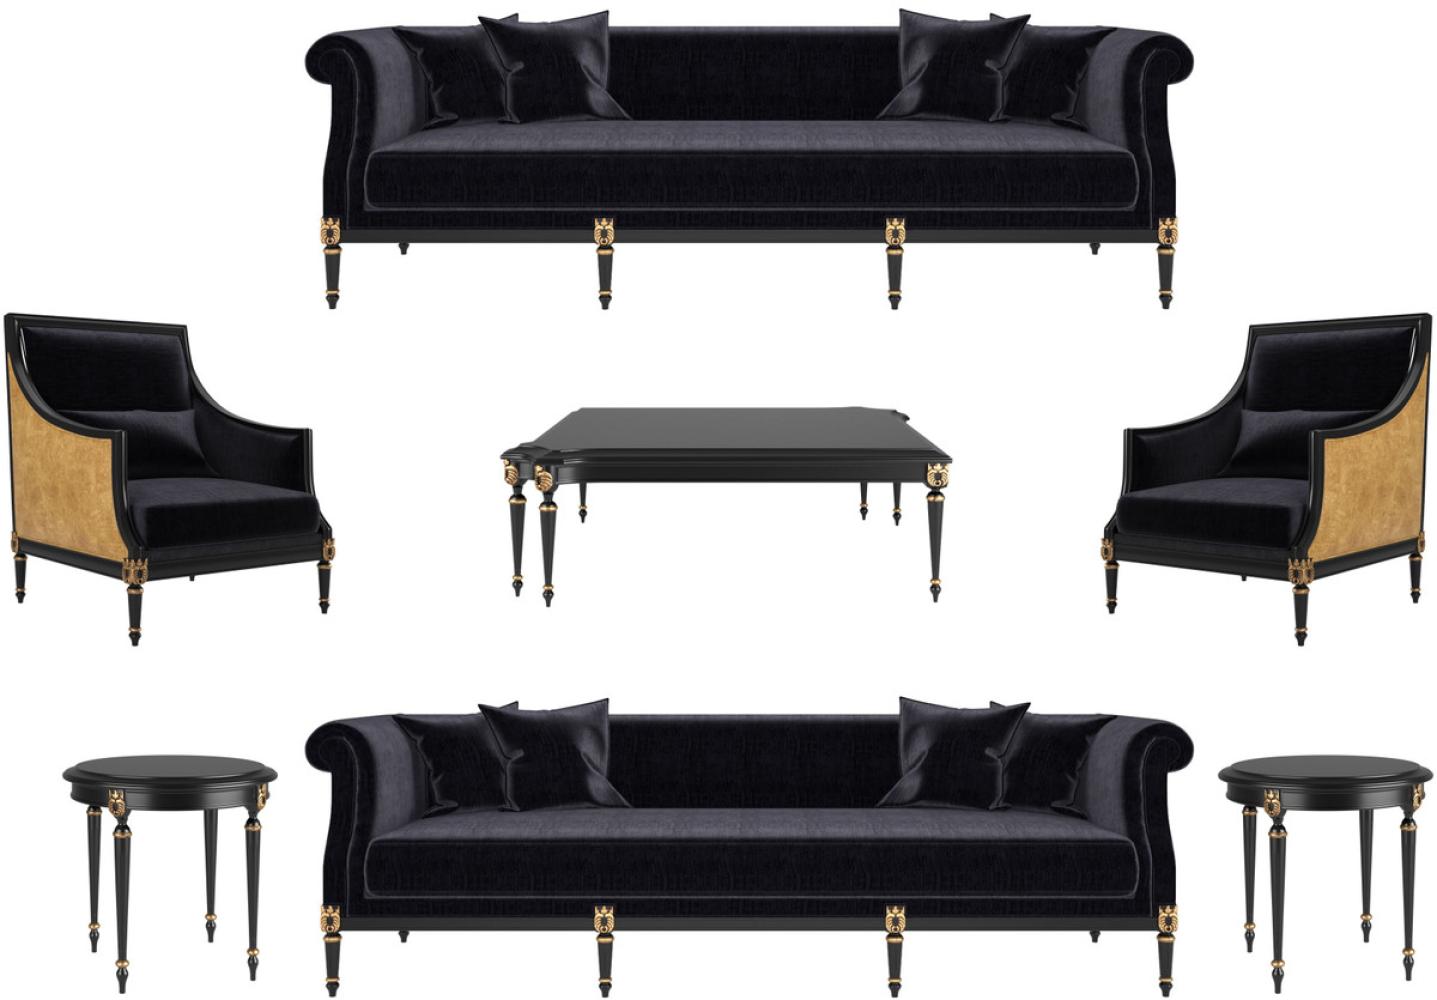 Casa Padrino Luxus Barock Wohnzimmer Set Schwarz / Gold / Antik Gold - 2 Sofas & 2 Sessel & 1 Couchtisch & 2 Beistelltische - Möbel im Barockstil - Edle Barock Wohnzimmer Möbel Bild 1